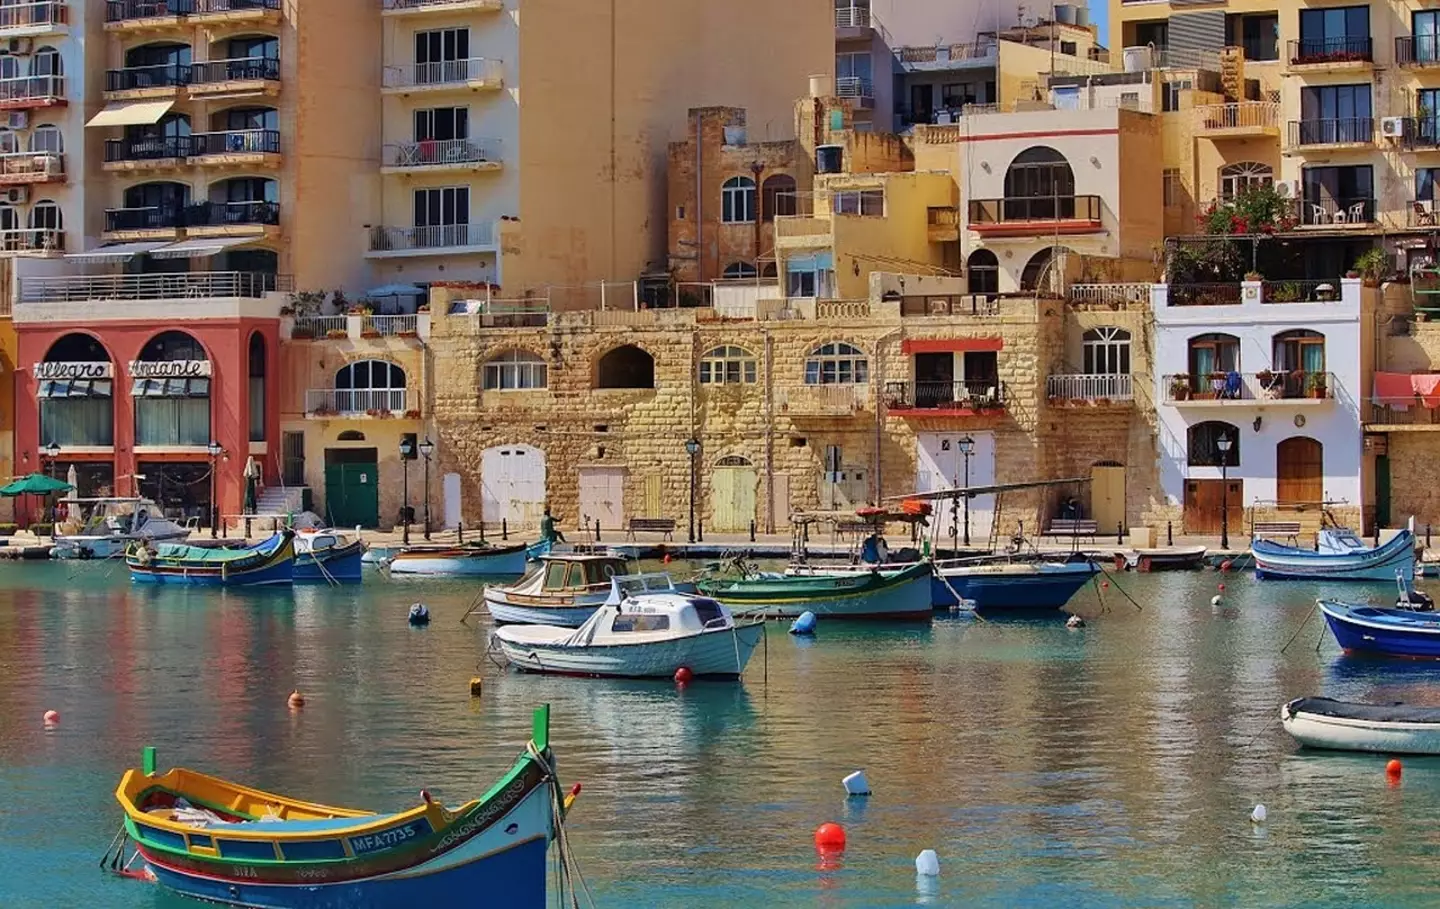 St Julian's in Malta.